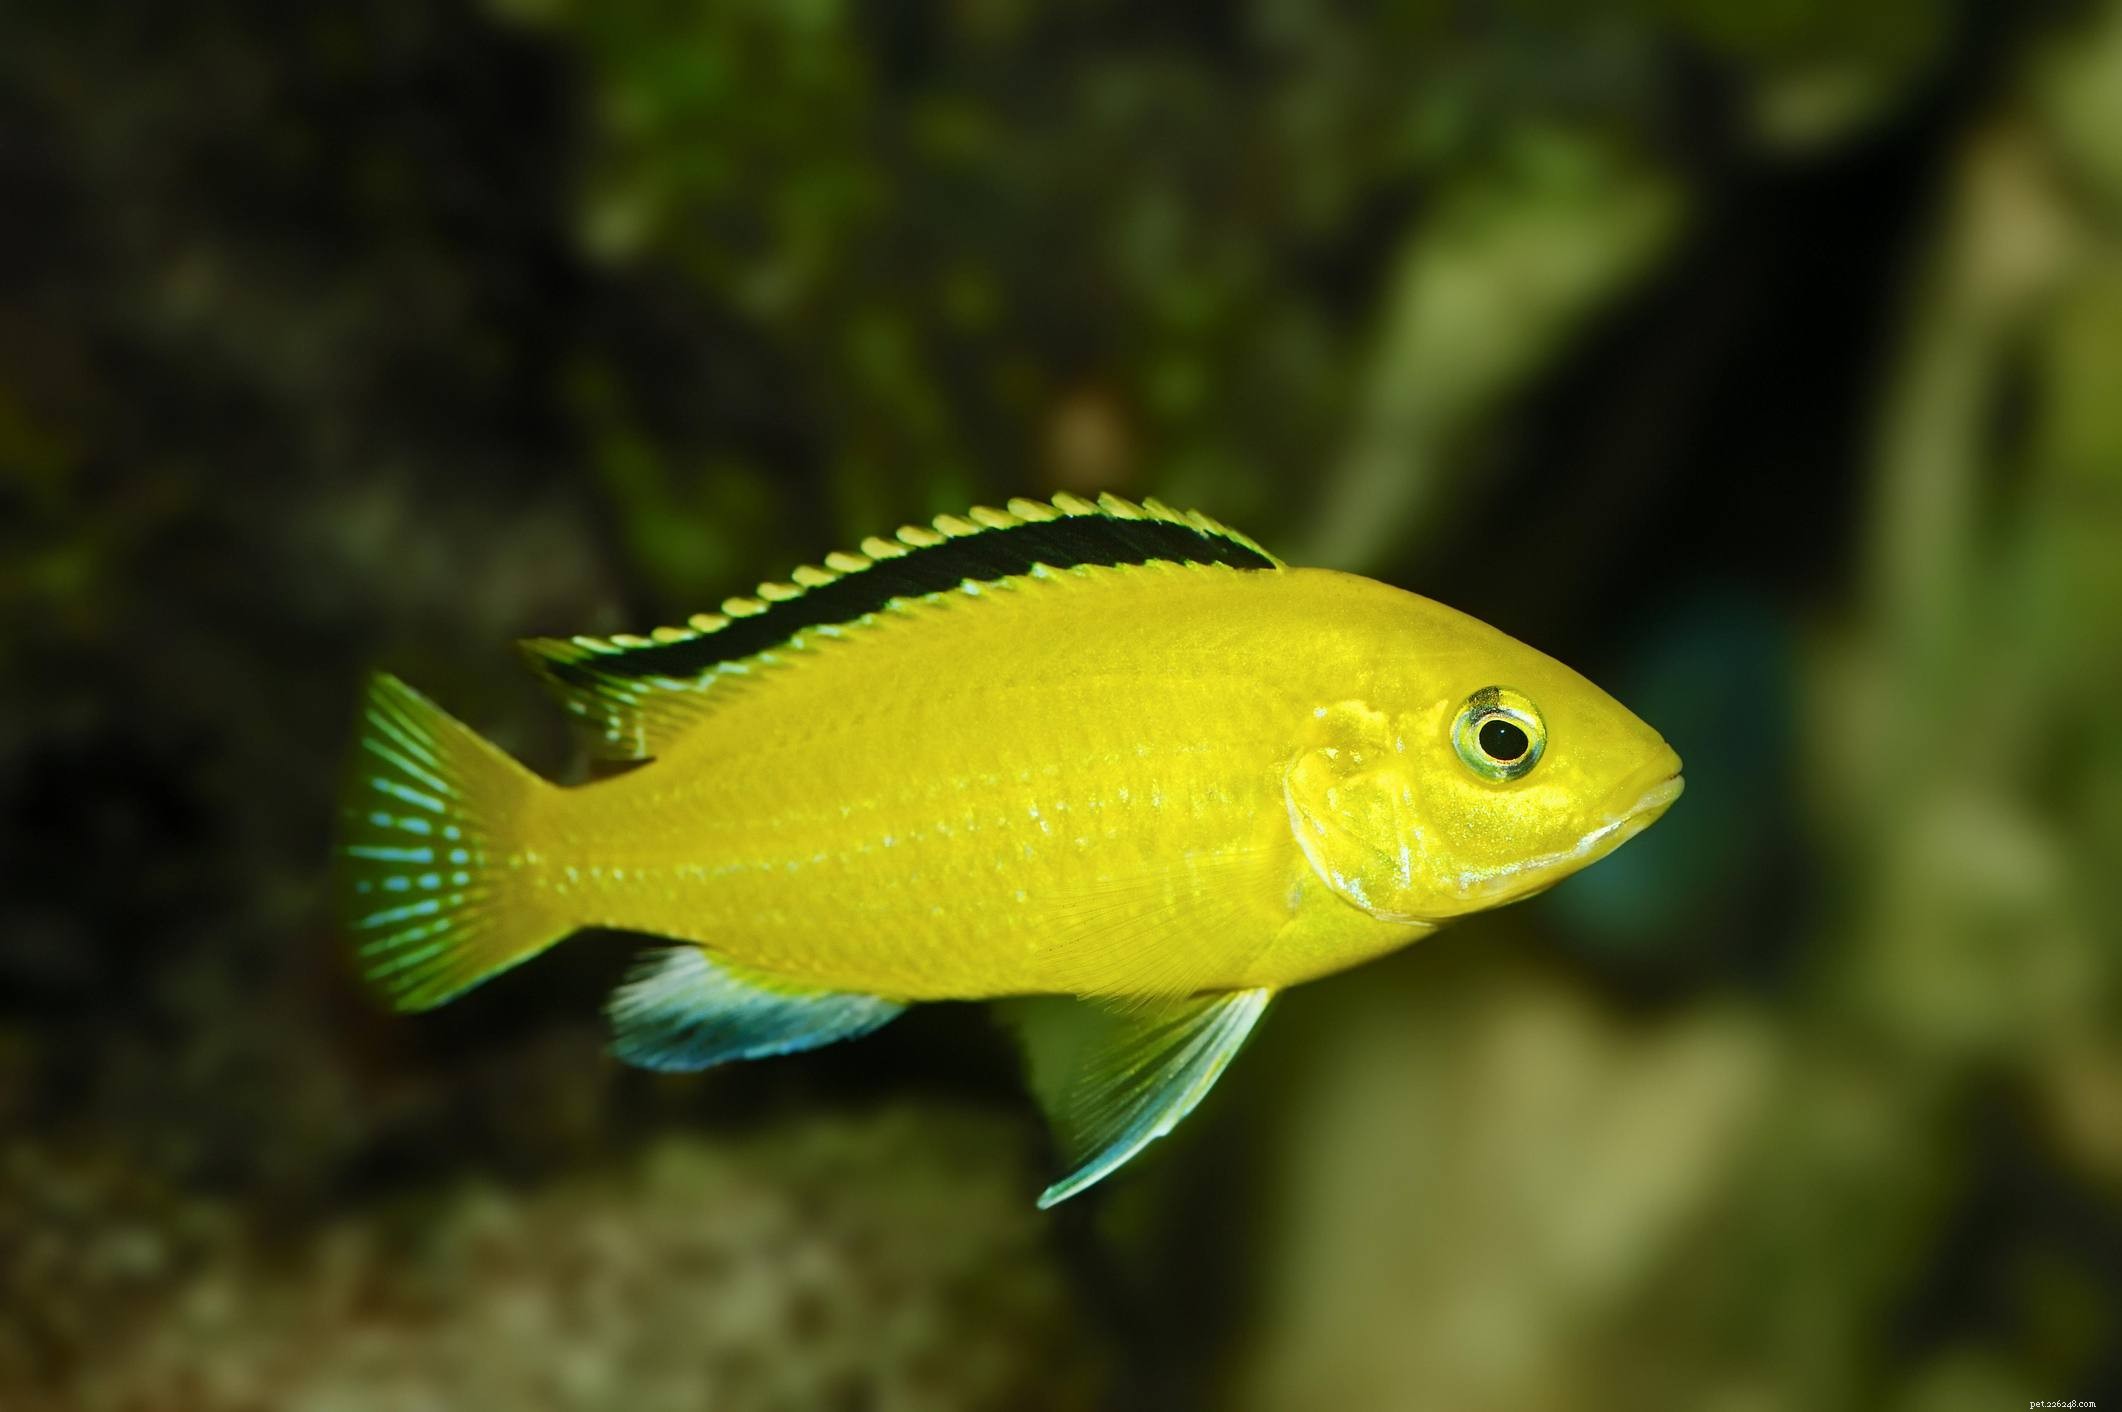 Liste utile des espèces de poissons d aquarium par nom commun